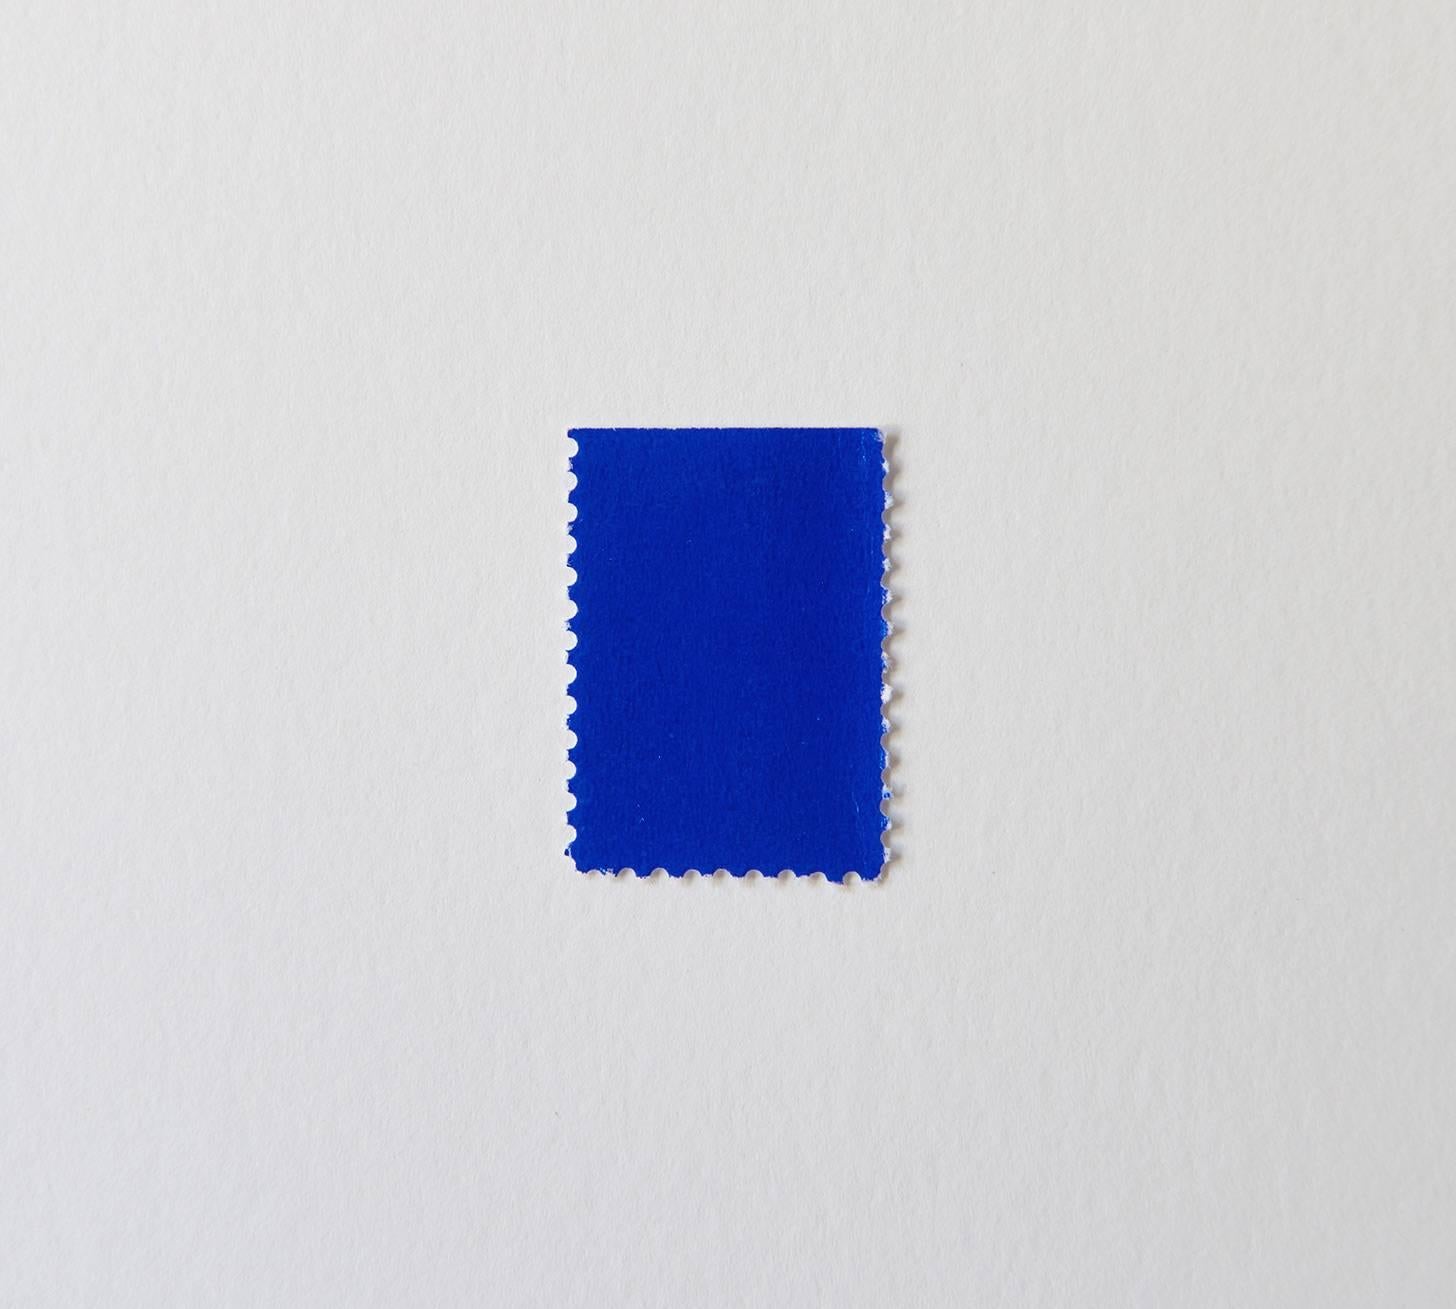 Diese Briefmarke ist praktisch ein Yves Klein-Gemälde in Miniaturformat. Sie stammt aus einer Serie, die Klein 1957 anfertigte, indem er Blöcke von Blanko-Briefmarken mit dem patentierten blauen Pigment bemalte, das zu seiner berühmten Signatur